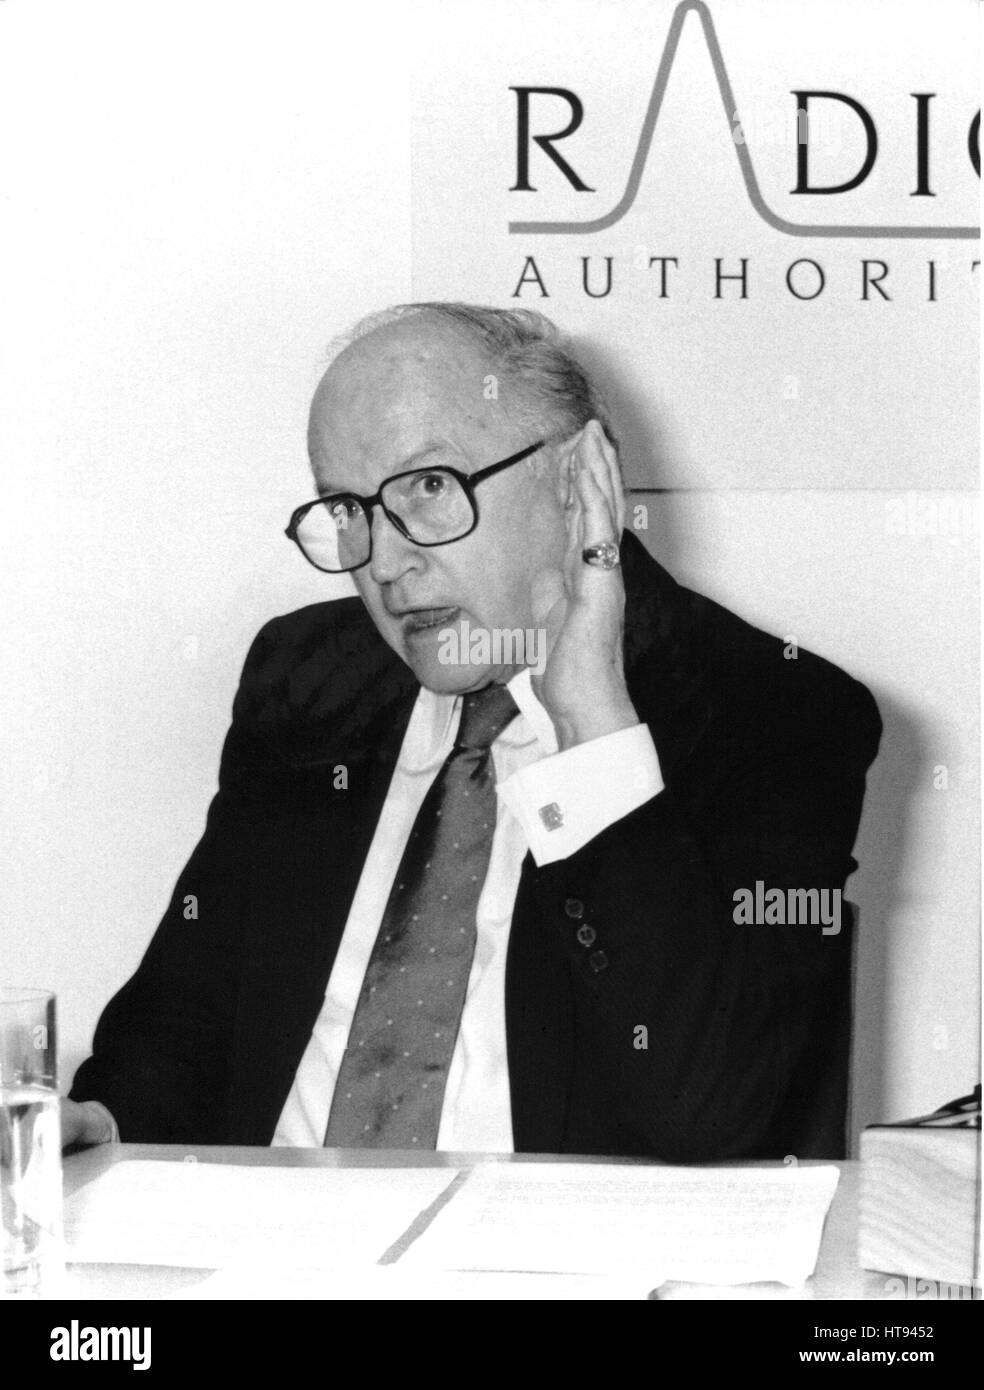 Lord Chalfont (Alun) Gwynne Jones, président de la Radio Authority, tient une conférence de presse à Londres, Angleterre le 9 janvier 1991. Banque D'Images